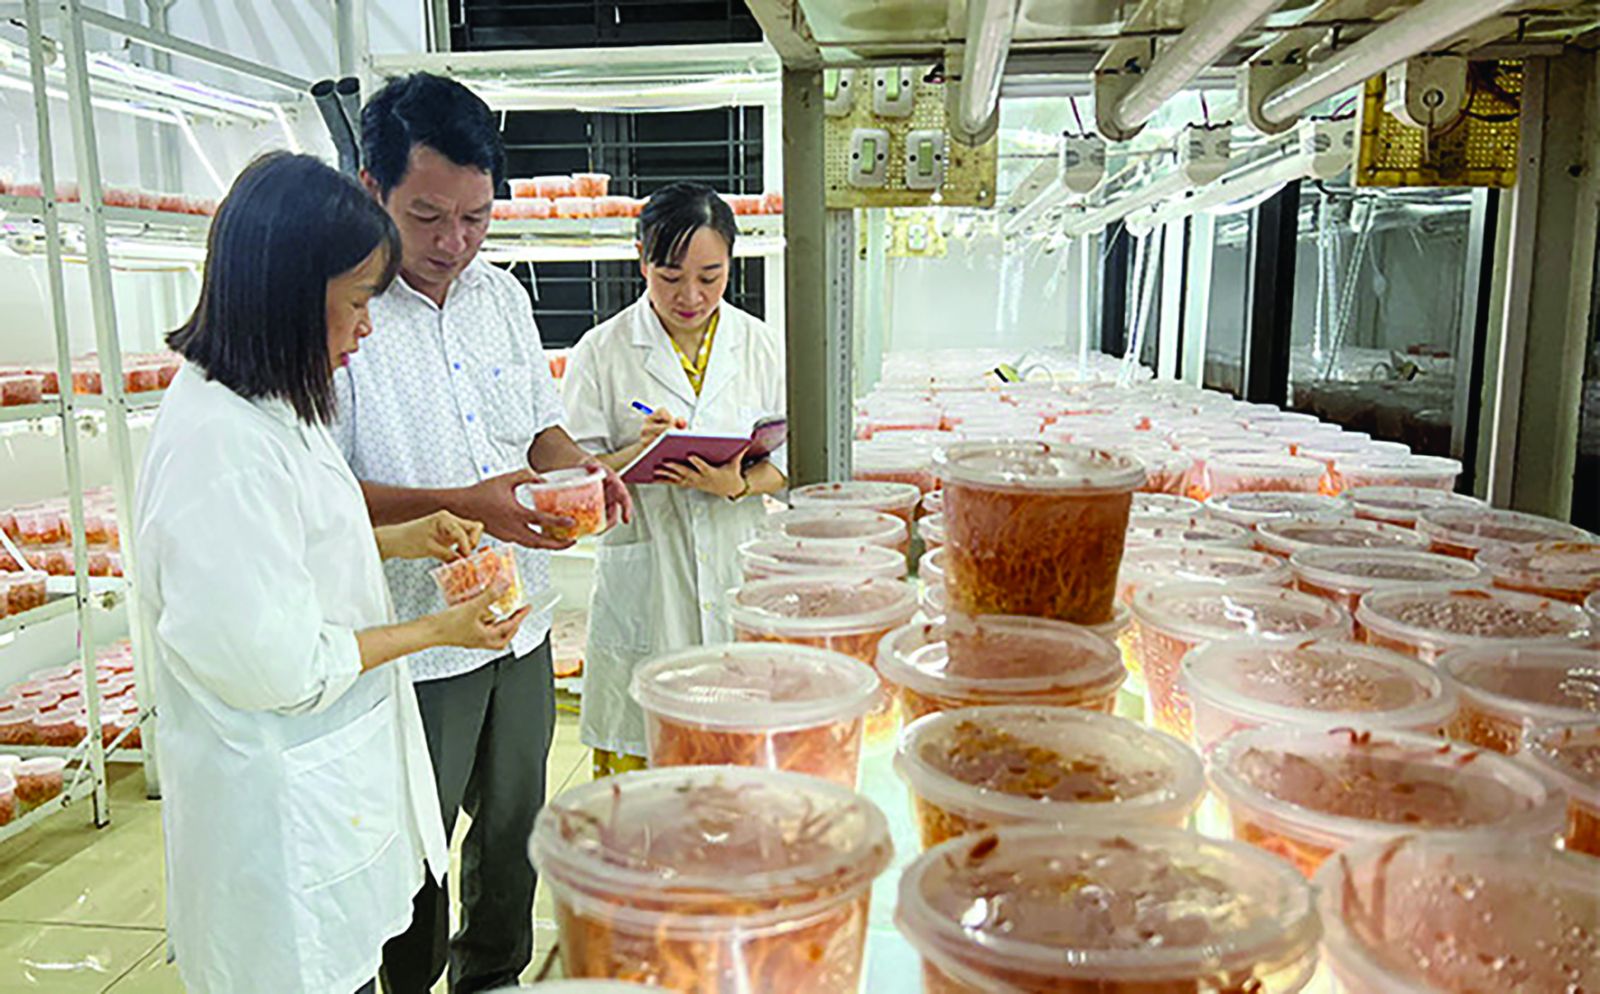  Lãnh đạo, cán bộ Trung tâm Ứng dụng kỹ thuật, thông tin KH&CN tỉnh Yên Bái kiểm tra tốc độ sinh trưởng của nấm đông trùng hạ thảo trong phòng lạnh